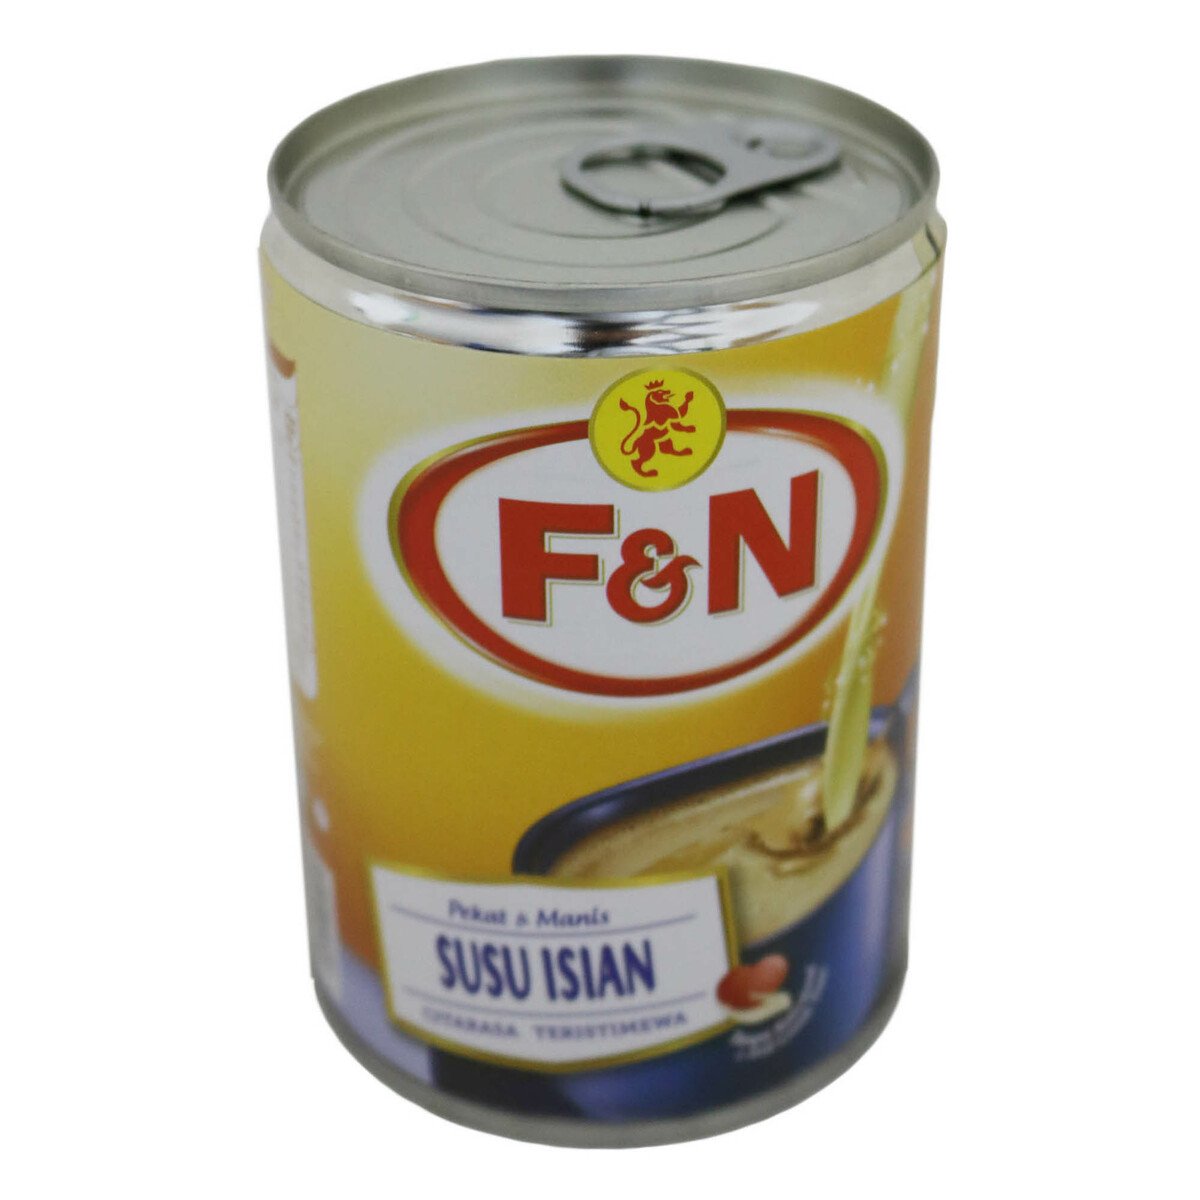 F&N Sweetened Condensed Filled Milk 500g